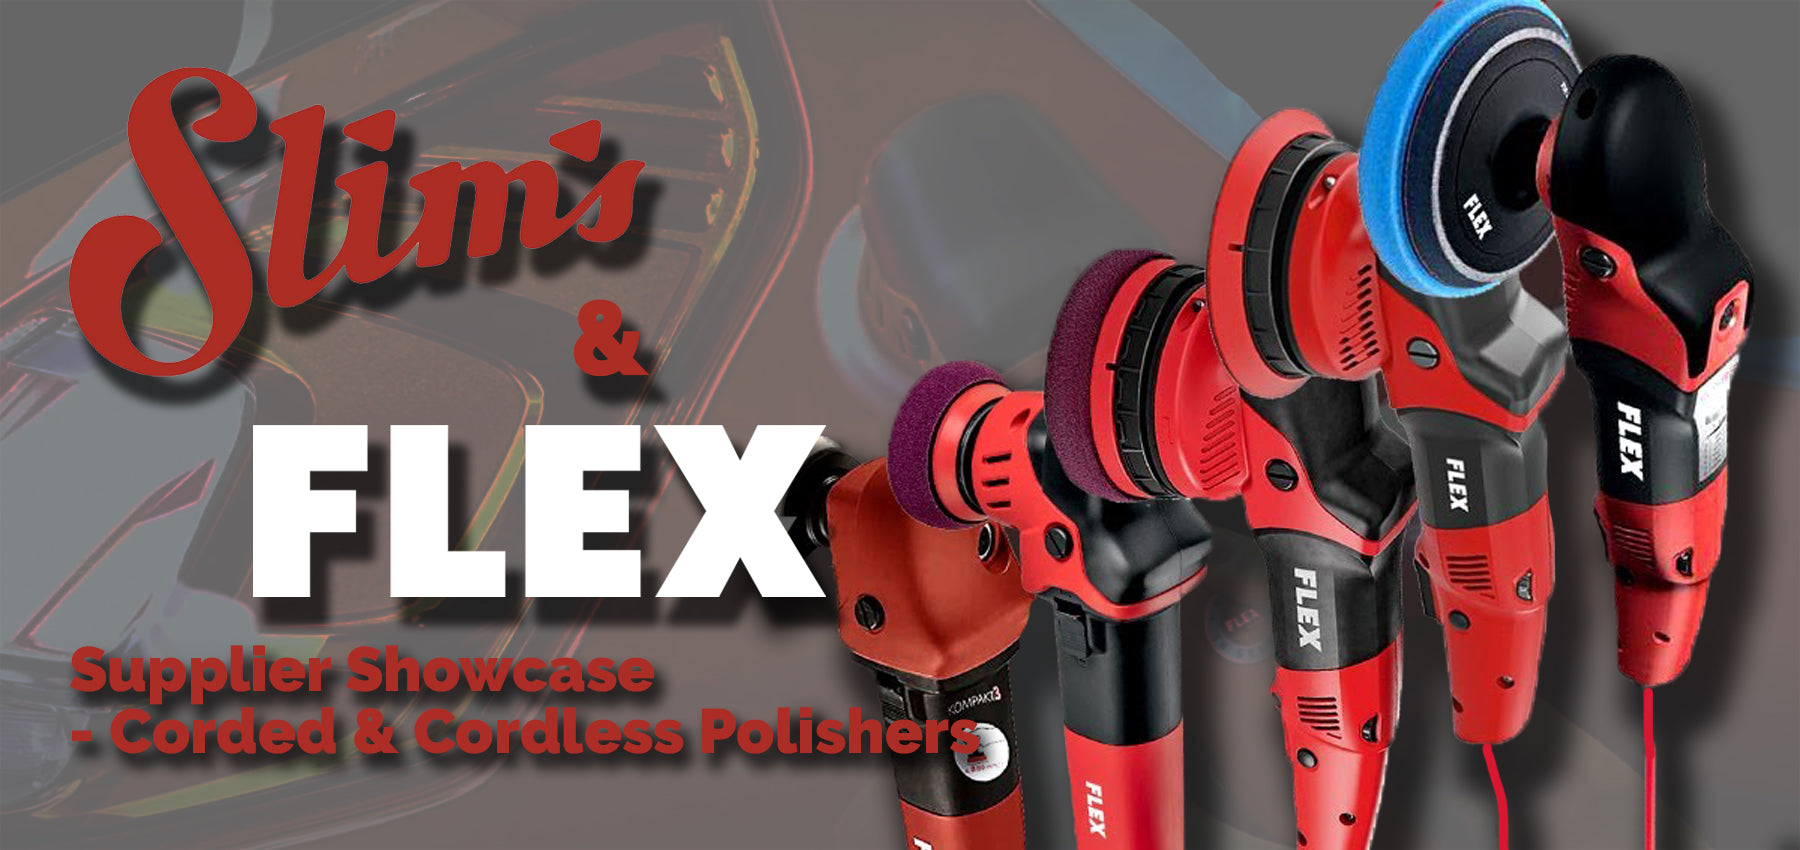 FLEX Supplier Showcase featuring Morten Wimshurst